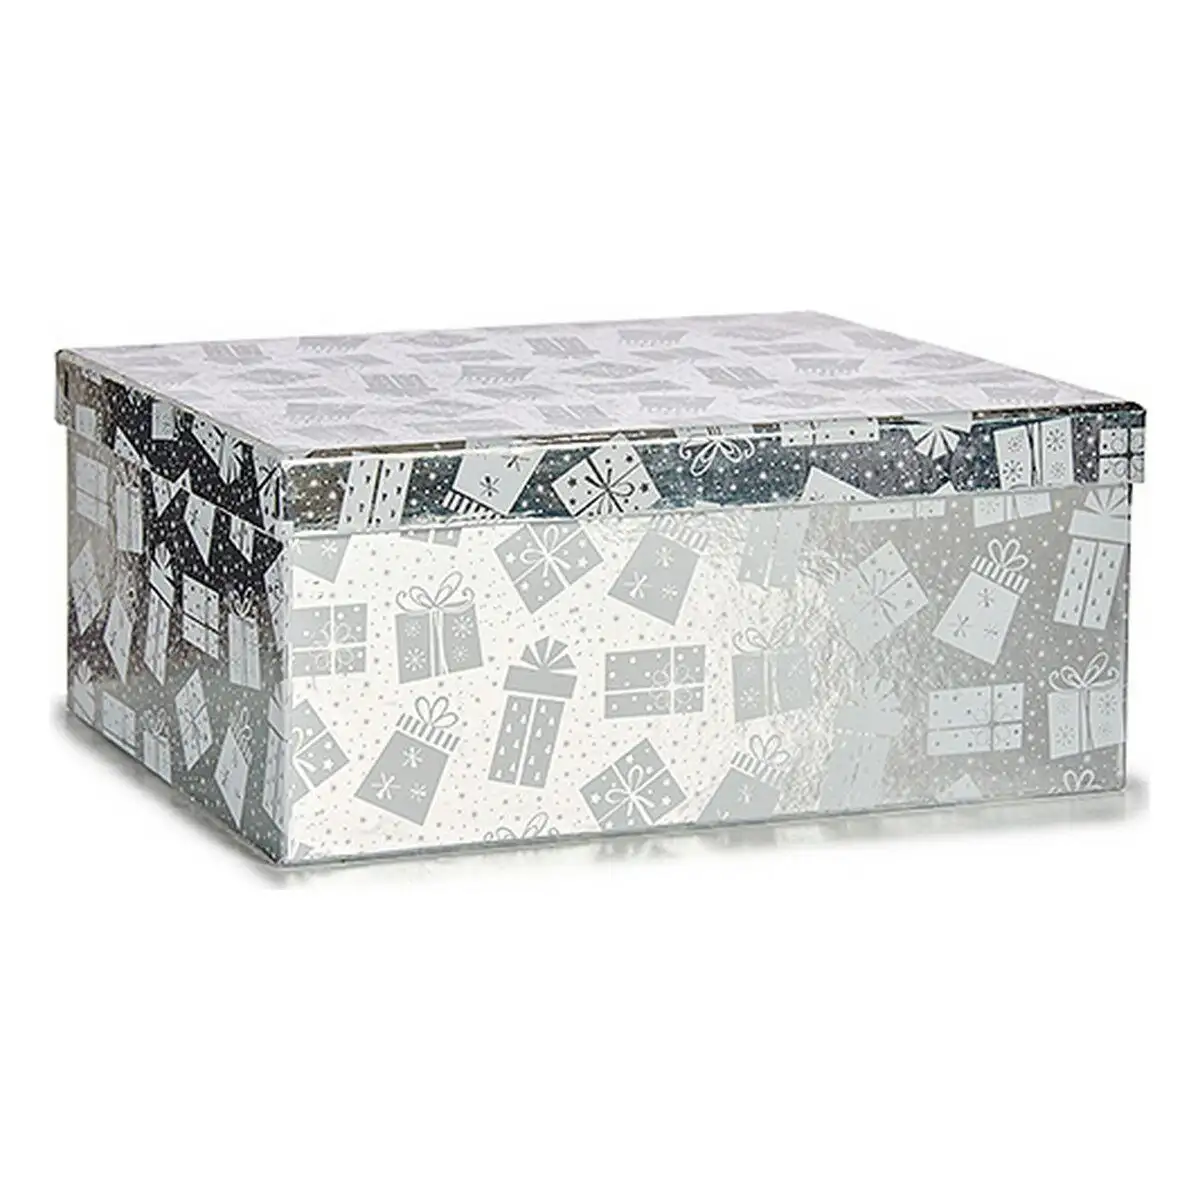 Set de boites decoratives noel boite cadeau argente carton_6224. DIAYTAR SENEGAL - L'Art du Shopping Facilité. Naviguez sur notre plateforme en ligne pour découvrir une expérience d'achat fluide et agréable, avec une gamme de produits adaptés à tous.